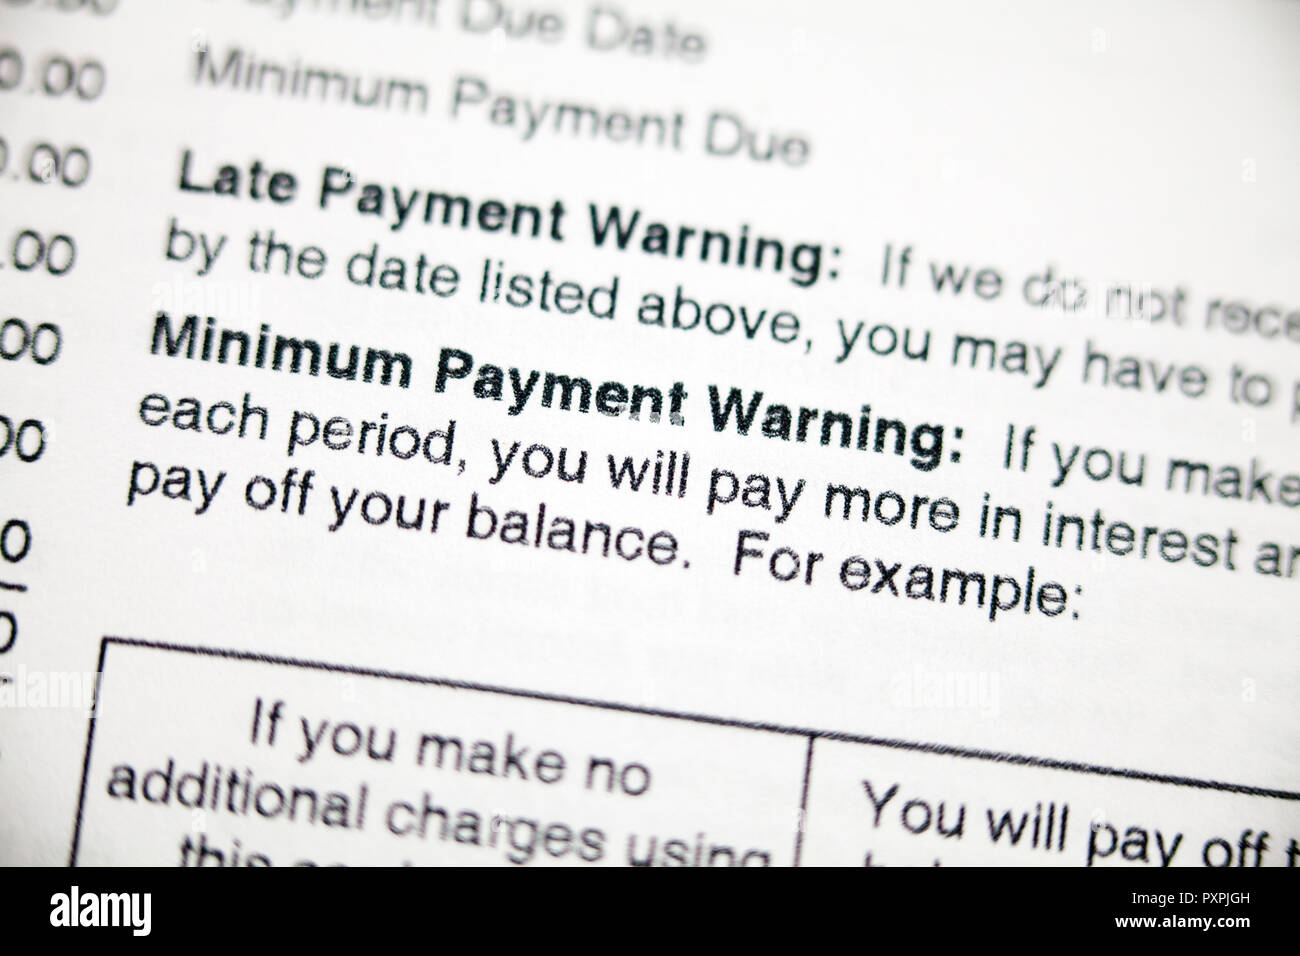 Verspätete Zahlung Warnung und minimale Zahlung Warnung auf der Kreditkartenabrechnung - USA Stockfoto